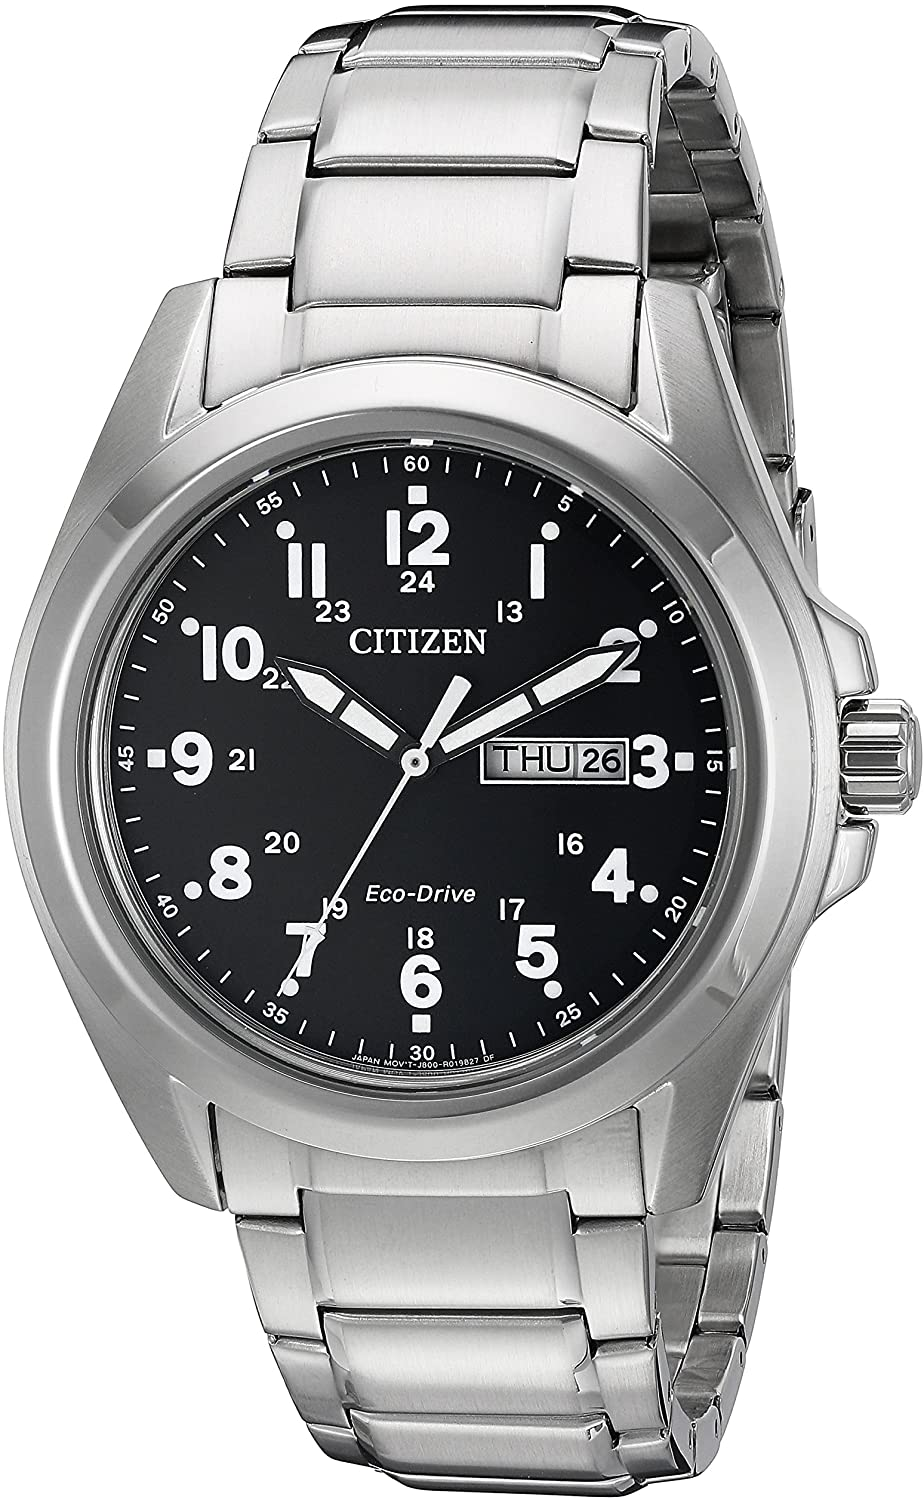 Reloj hombre Citizen Ecodrive Garrison AW0050-82E 43mm dial negro correa de acero 100m WR movimiento Ecodrive (funciona con energía solar o luz)